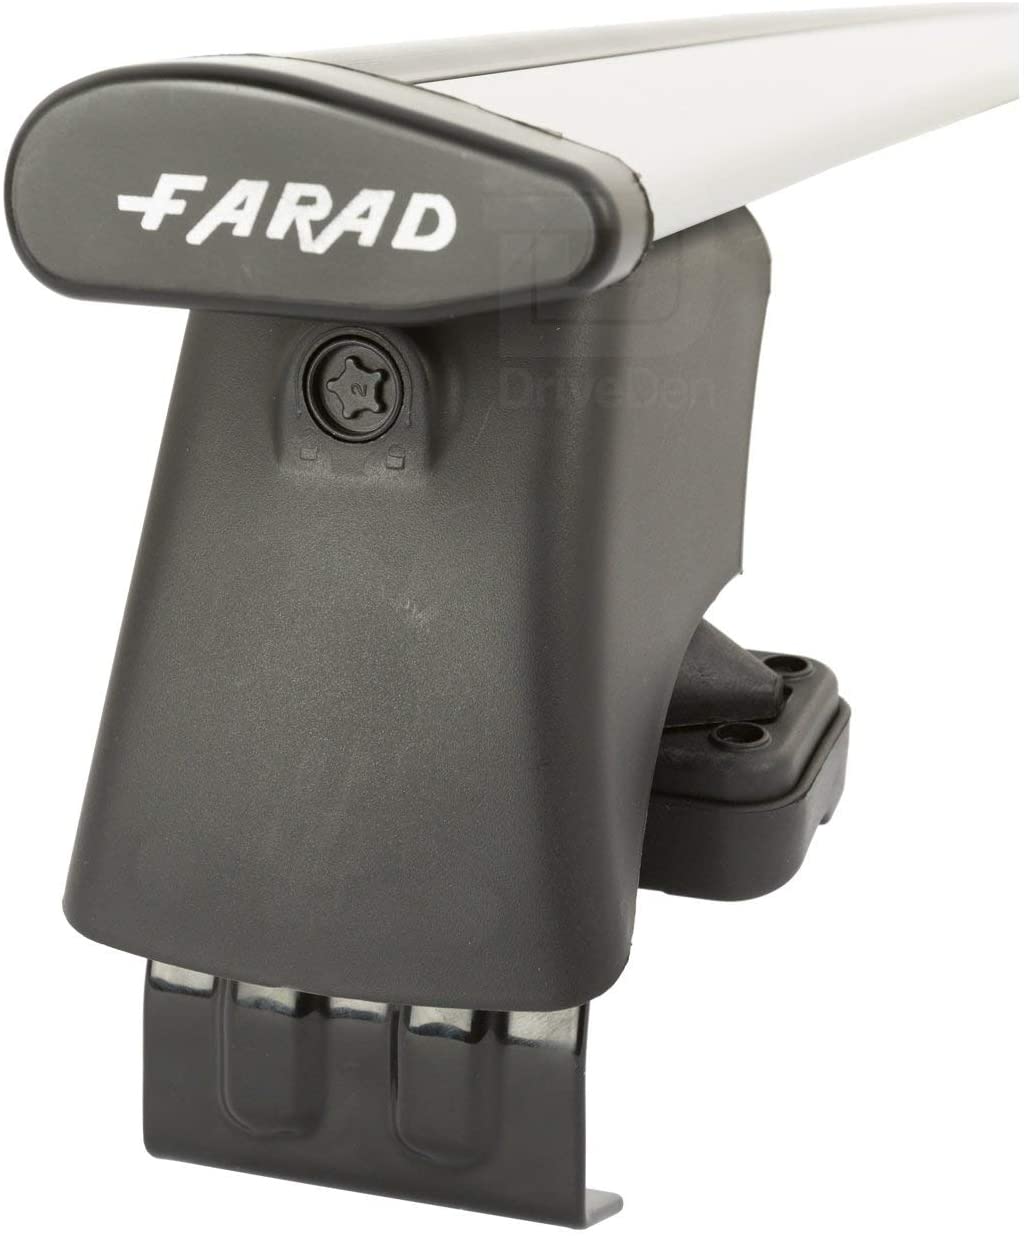 FARAD-Kit H2 per barre portatutto - Kia Picanto 2004-2011 (senza corrimano)